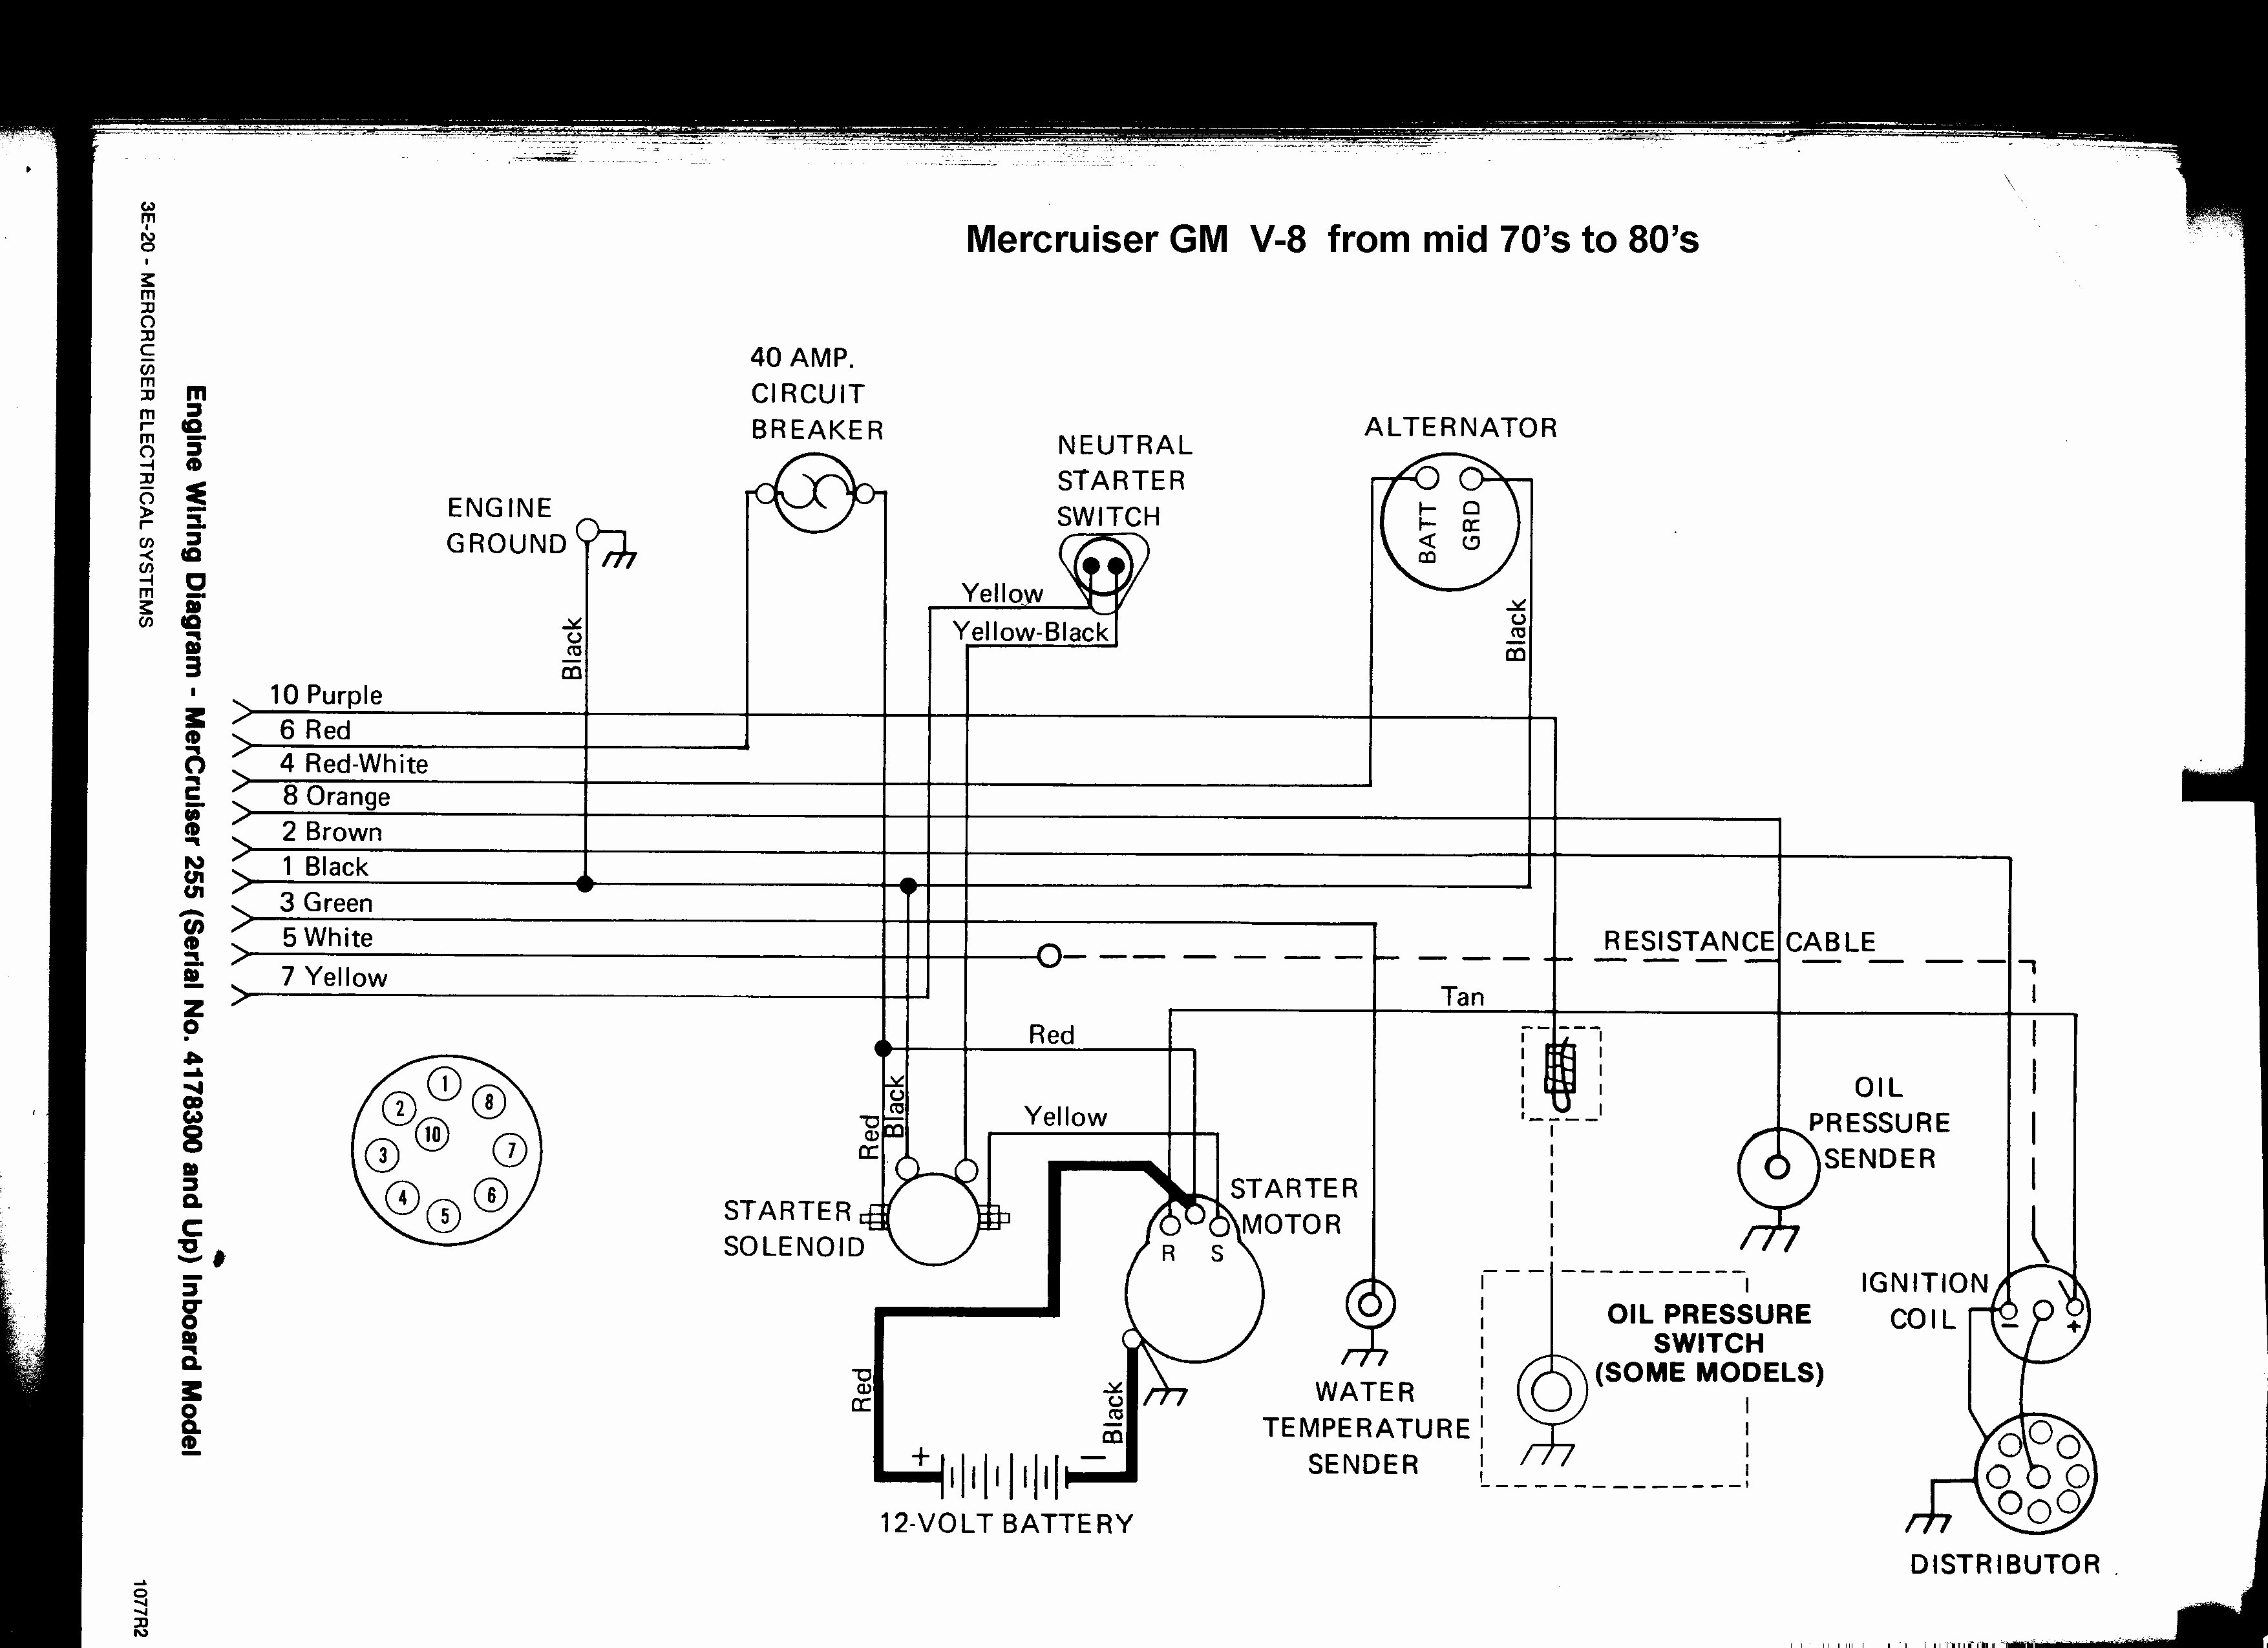 Mercruiser 140 Engine Diagram Mercruiser 3 0 Wiring Diagram Inspirational Wiring Diagram Of Mercruiser 140 Engine Diagram